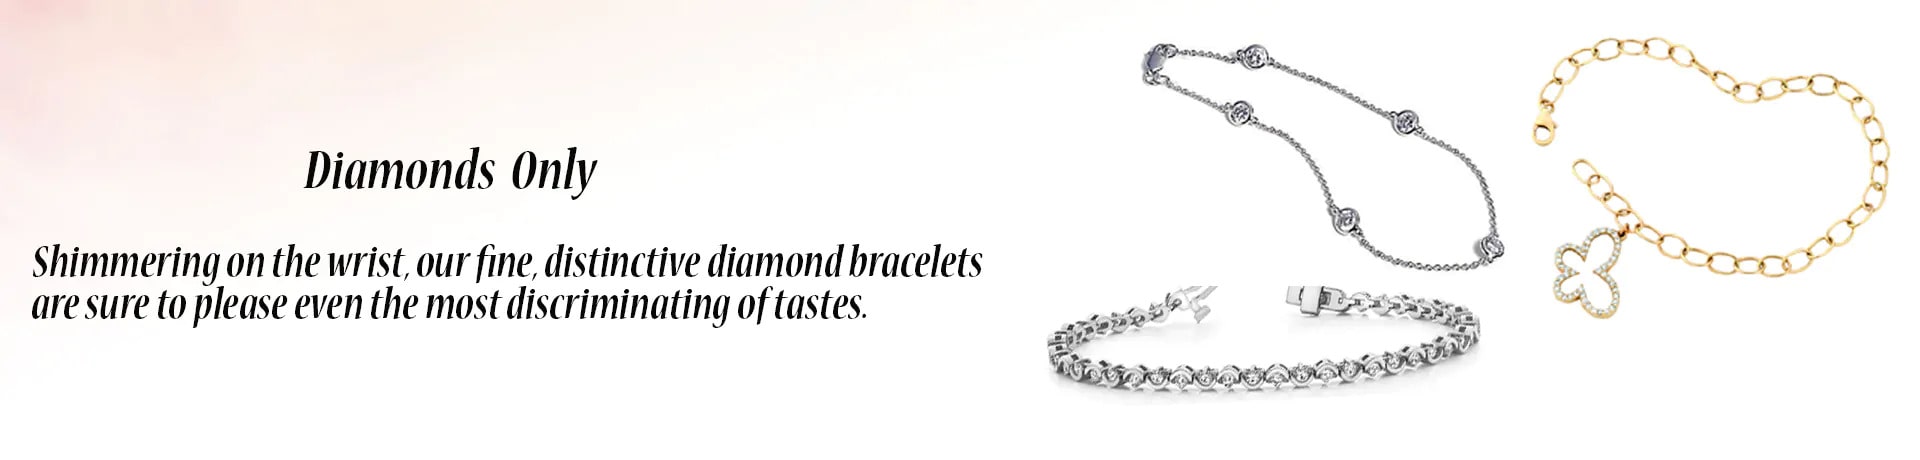 Diamond Bracelets Only